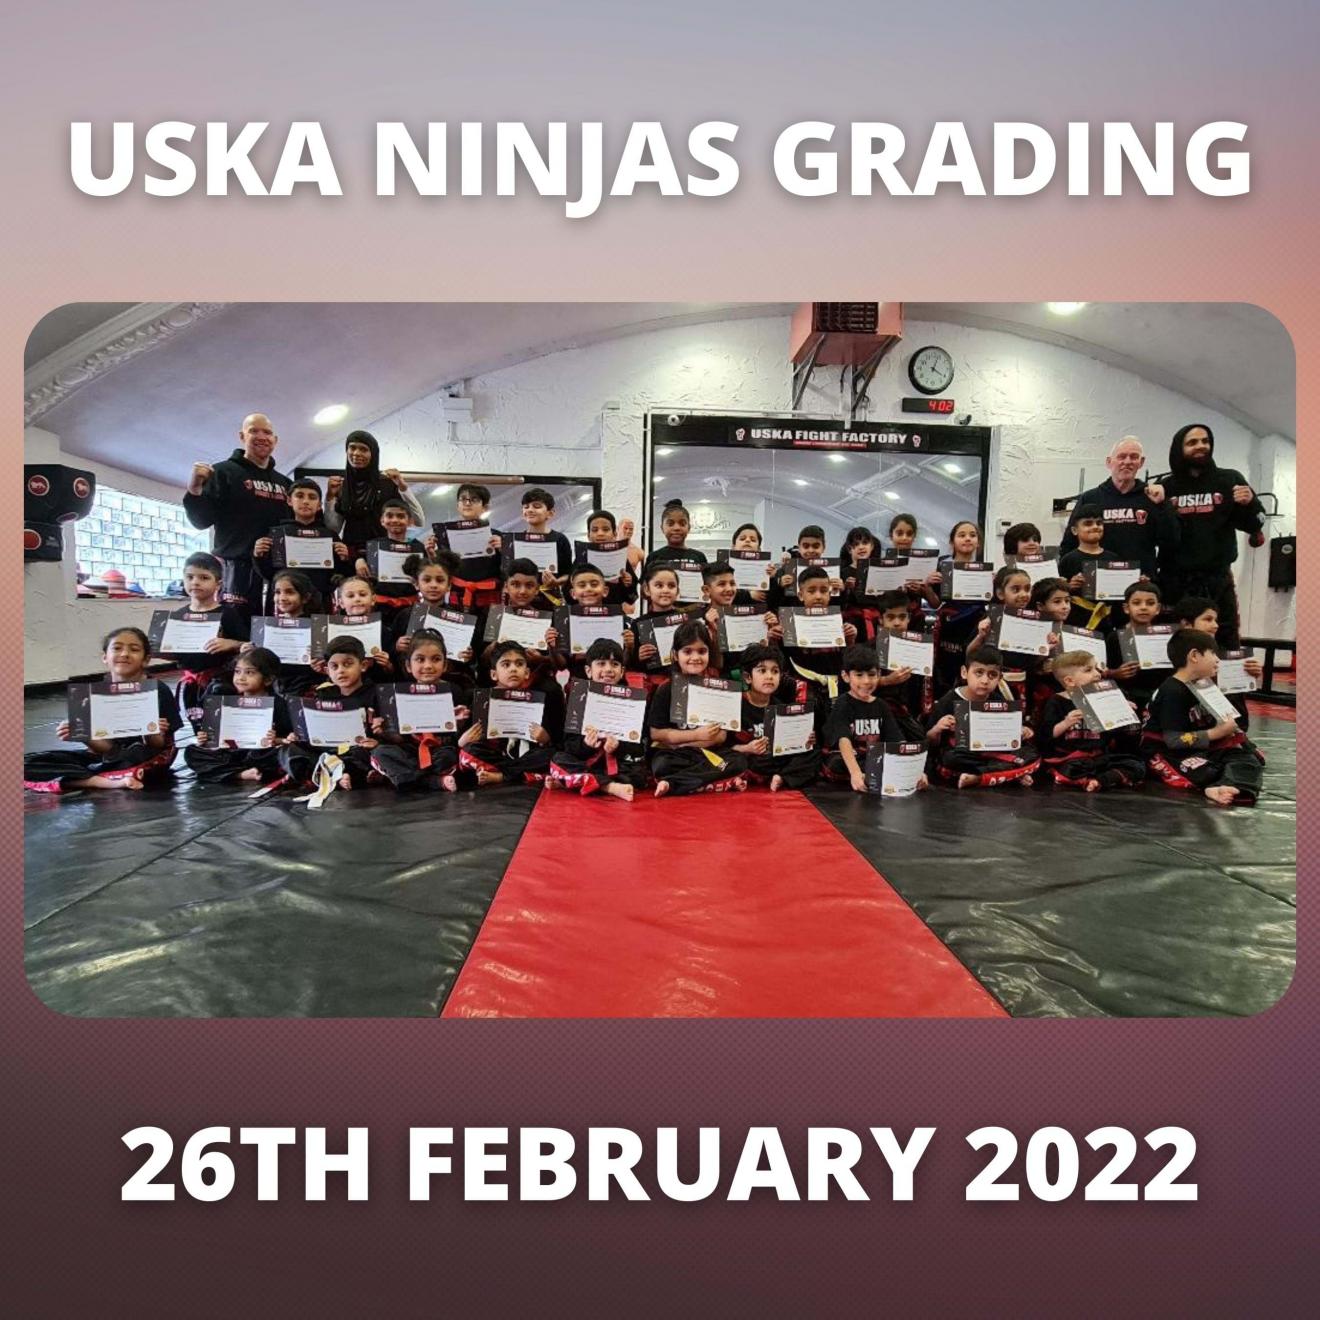 26-02-22 - USKA Ninja's Grading Success